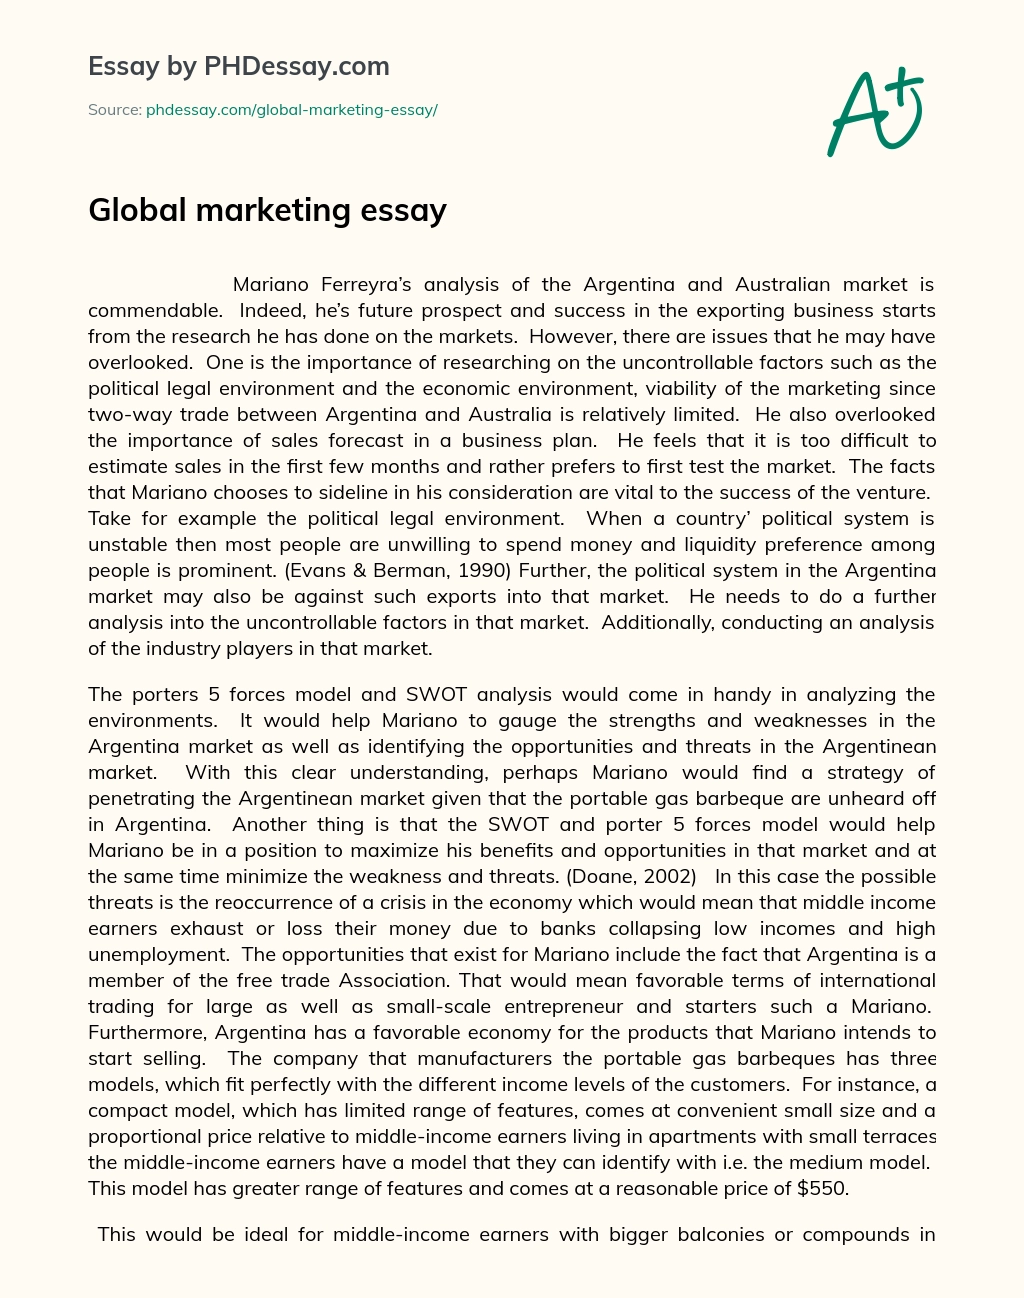 Global marketing essay essay